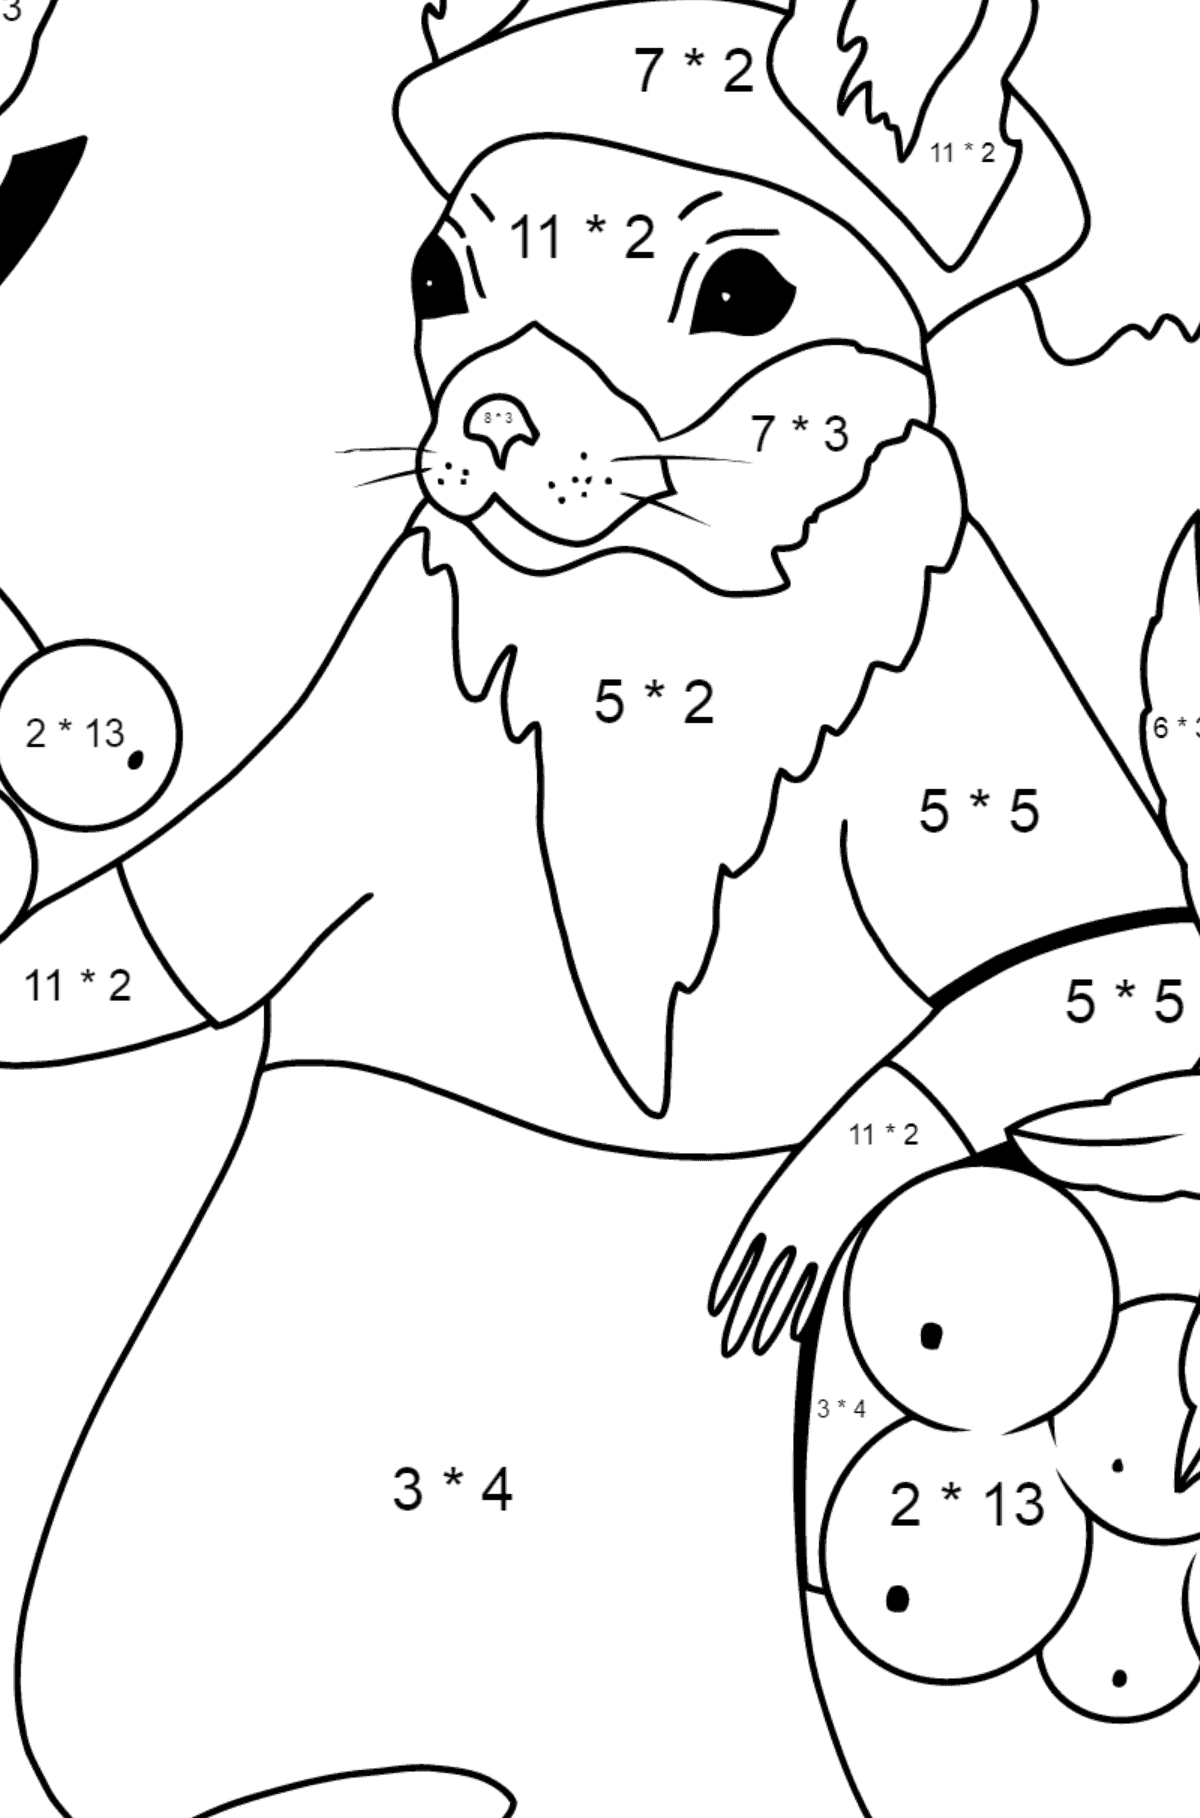 Herbstliche Ausmalbild - Ein Eichhörnchen mit roten Vogelbeeren - Mathe Ausmalbilder - Multiplikation für Kinder